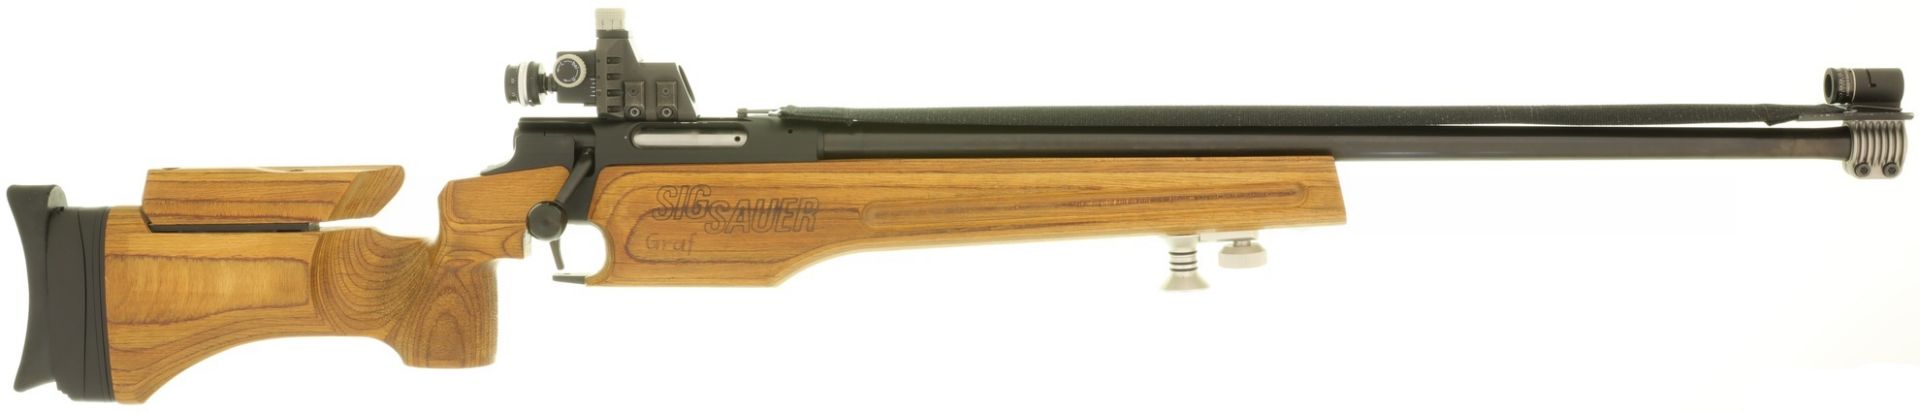 Standardgewehr, SIG-SAUER 205, Kal. 7.5x55